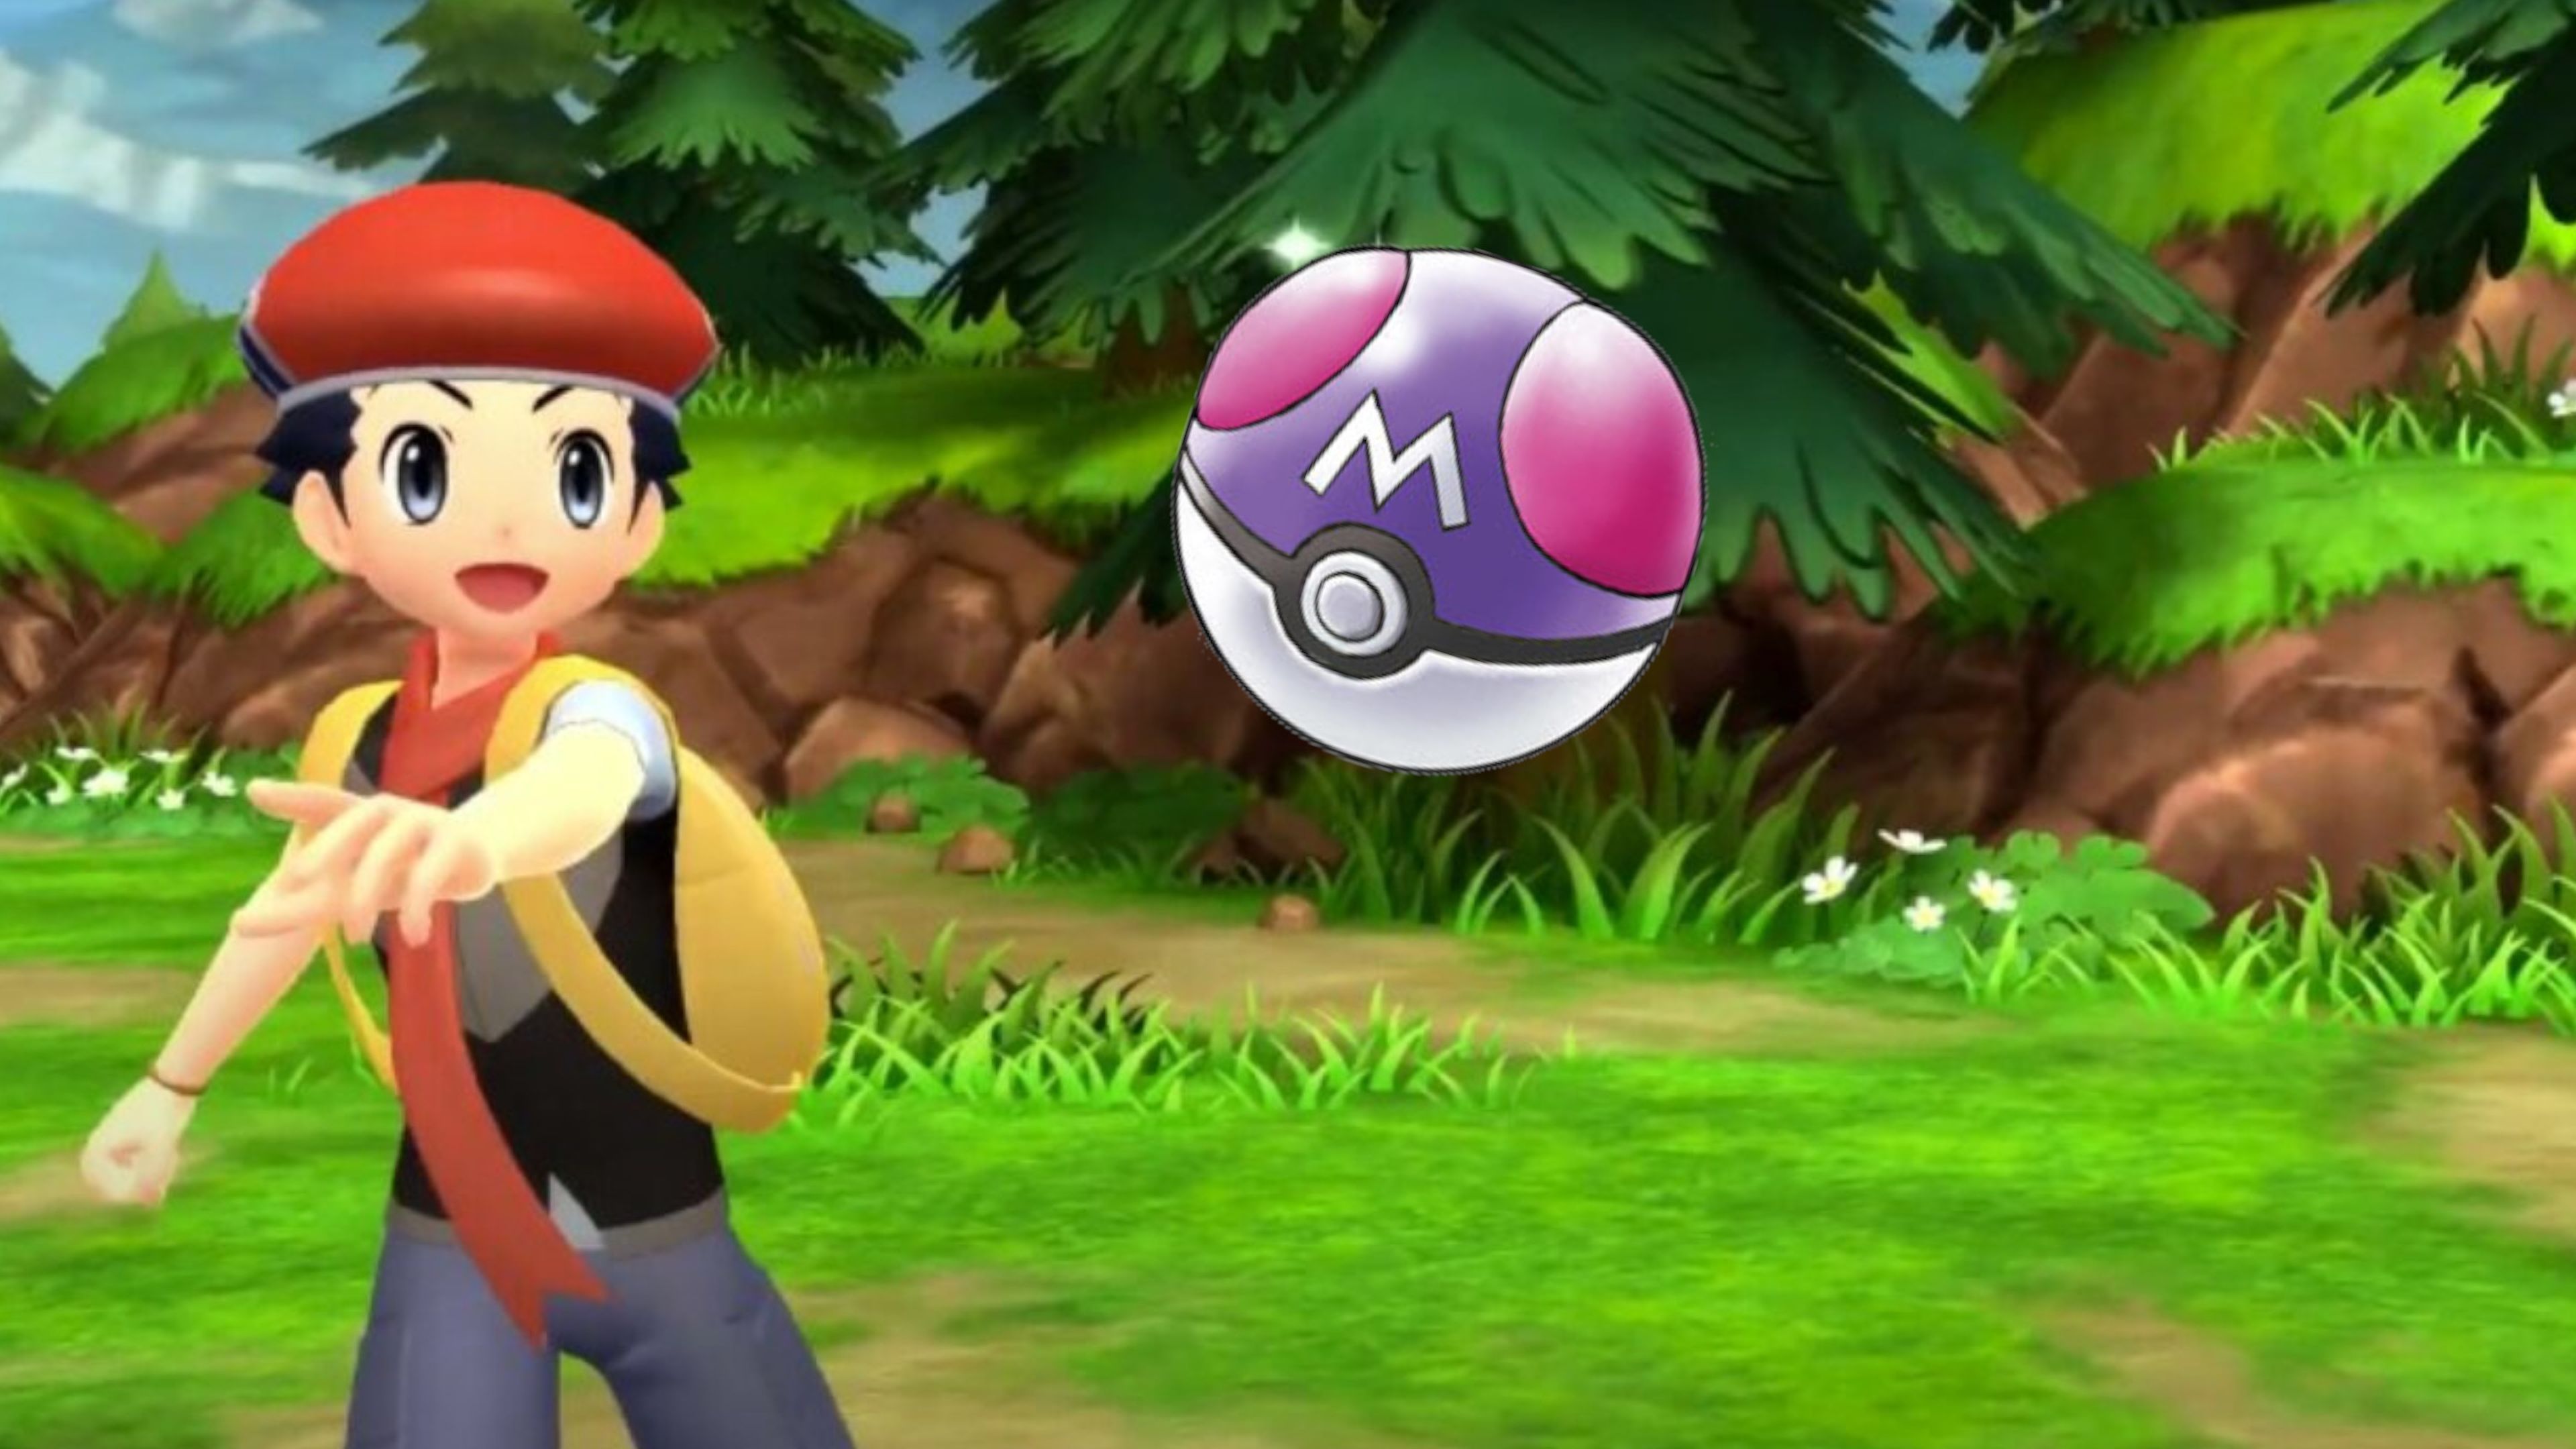 Anunciados Pokémon Diamante Brillante y Perla Reluciente para